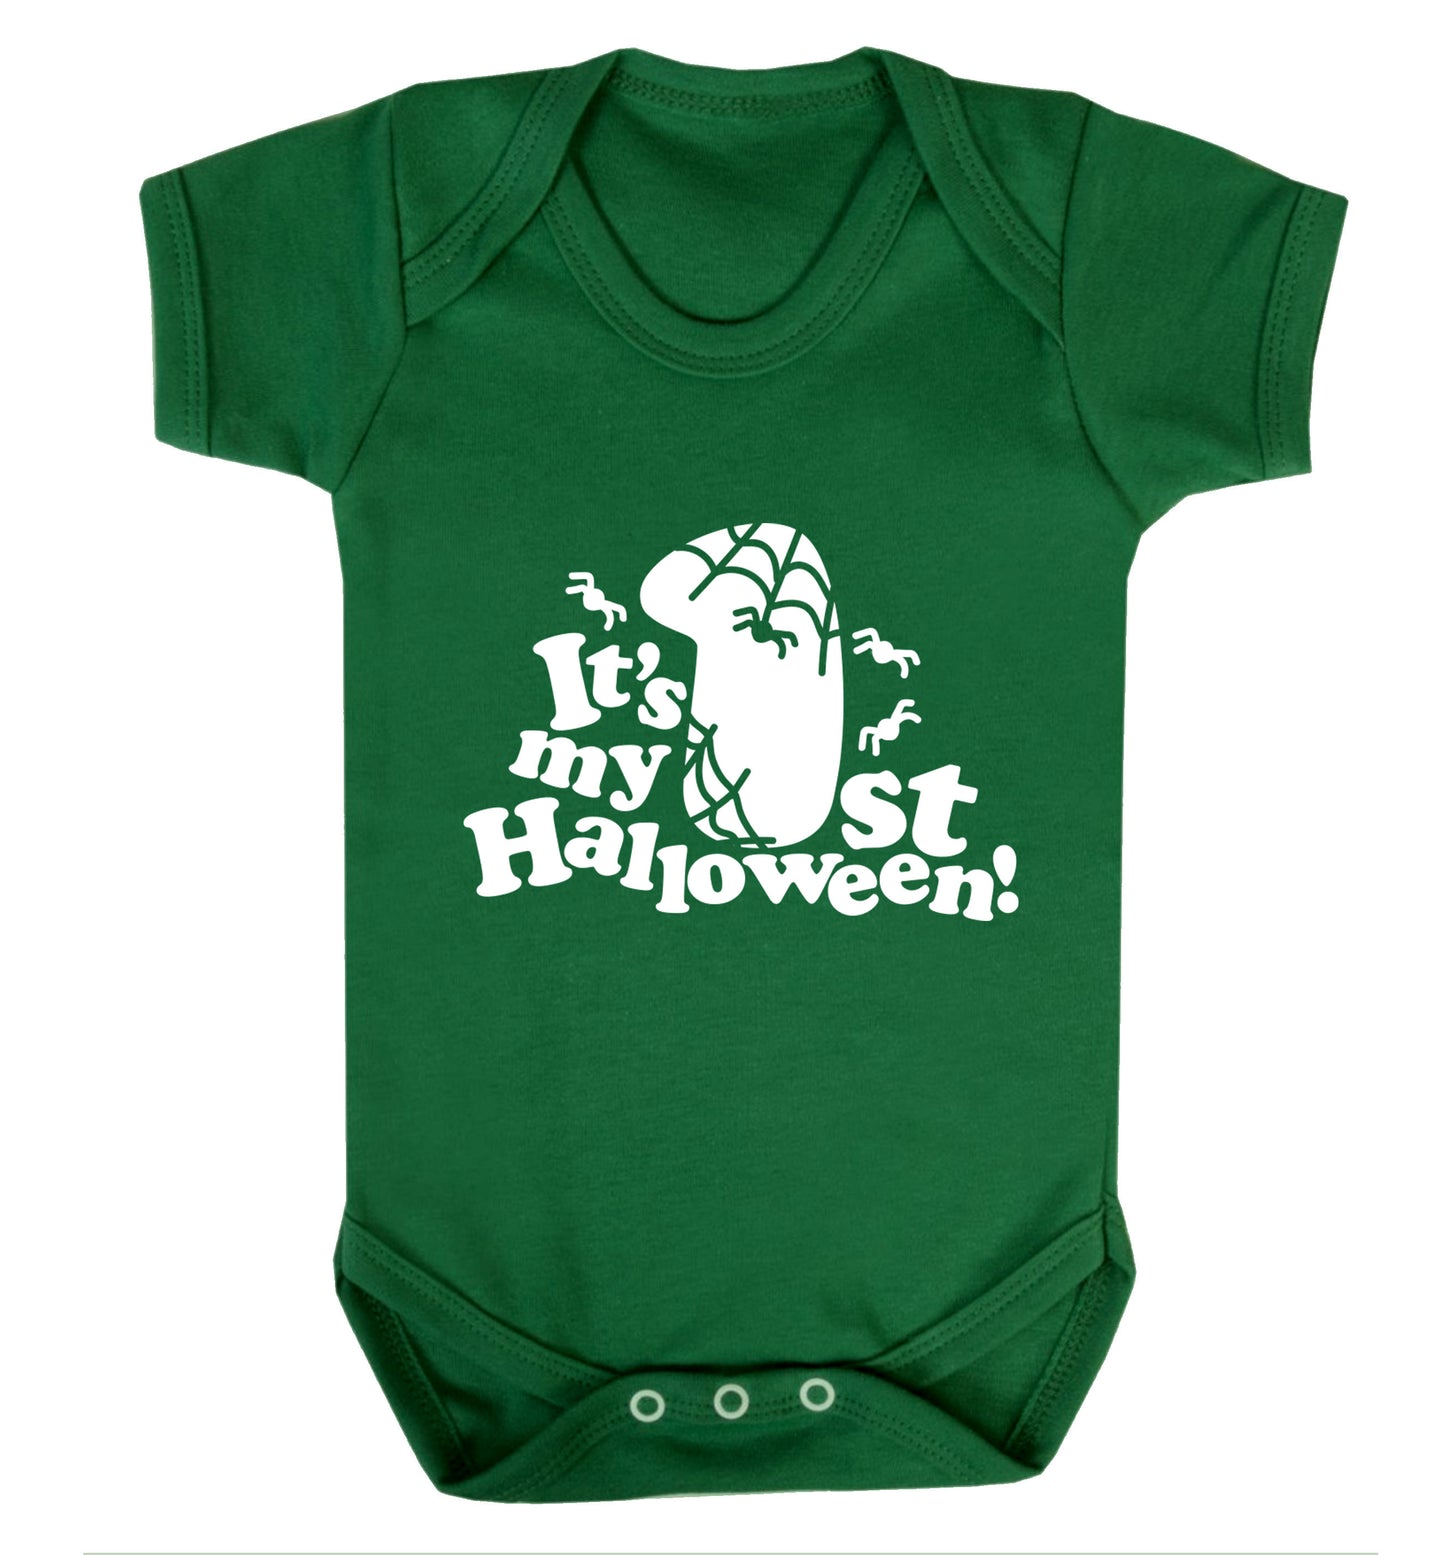 1st Halloween Baby Vest green 18-24 months